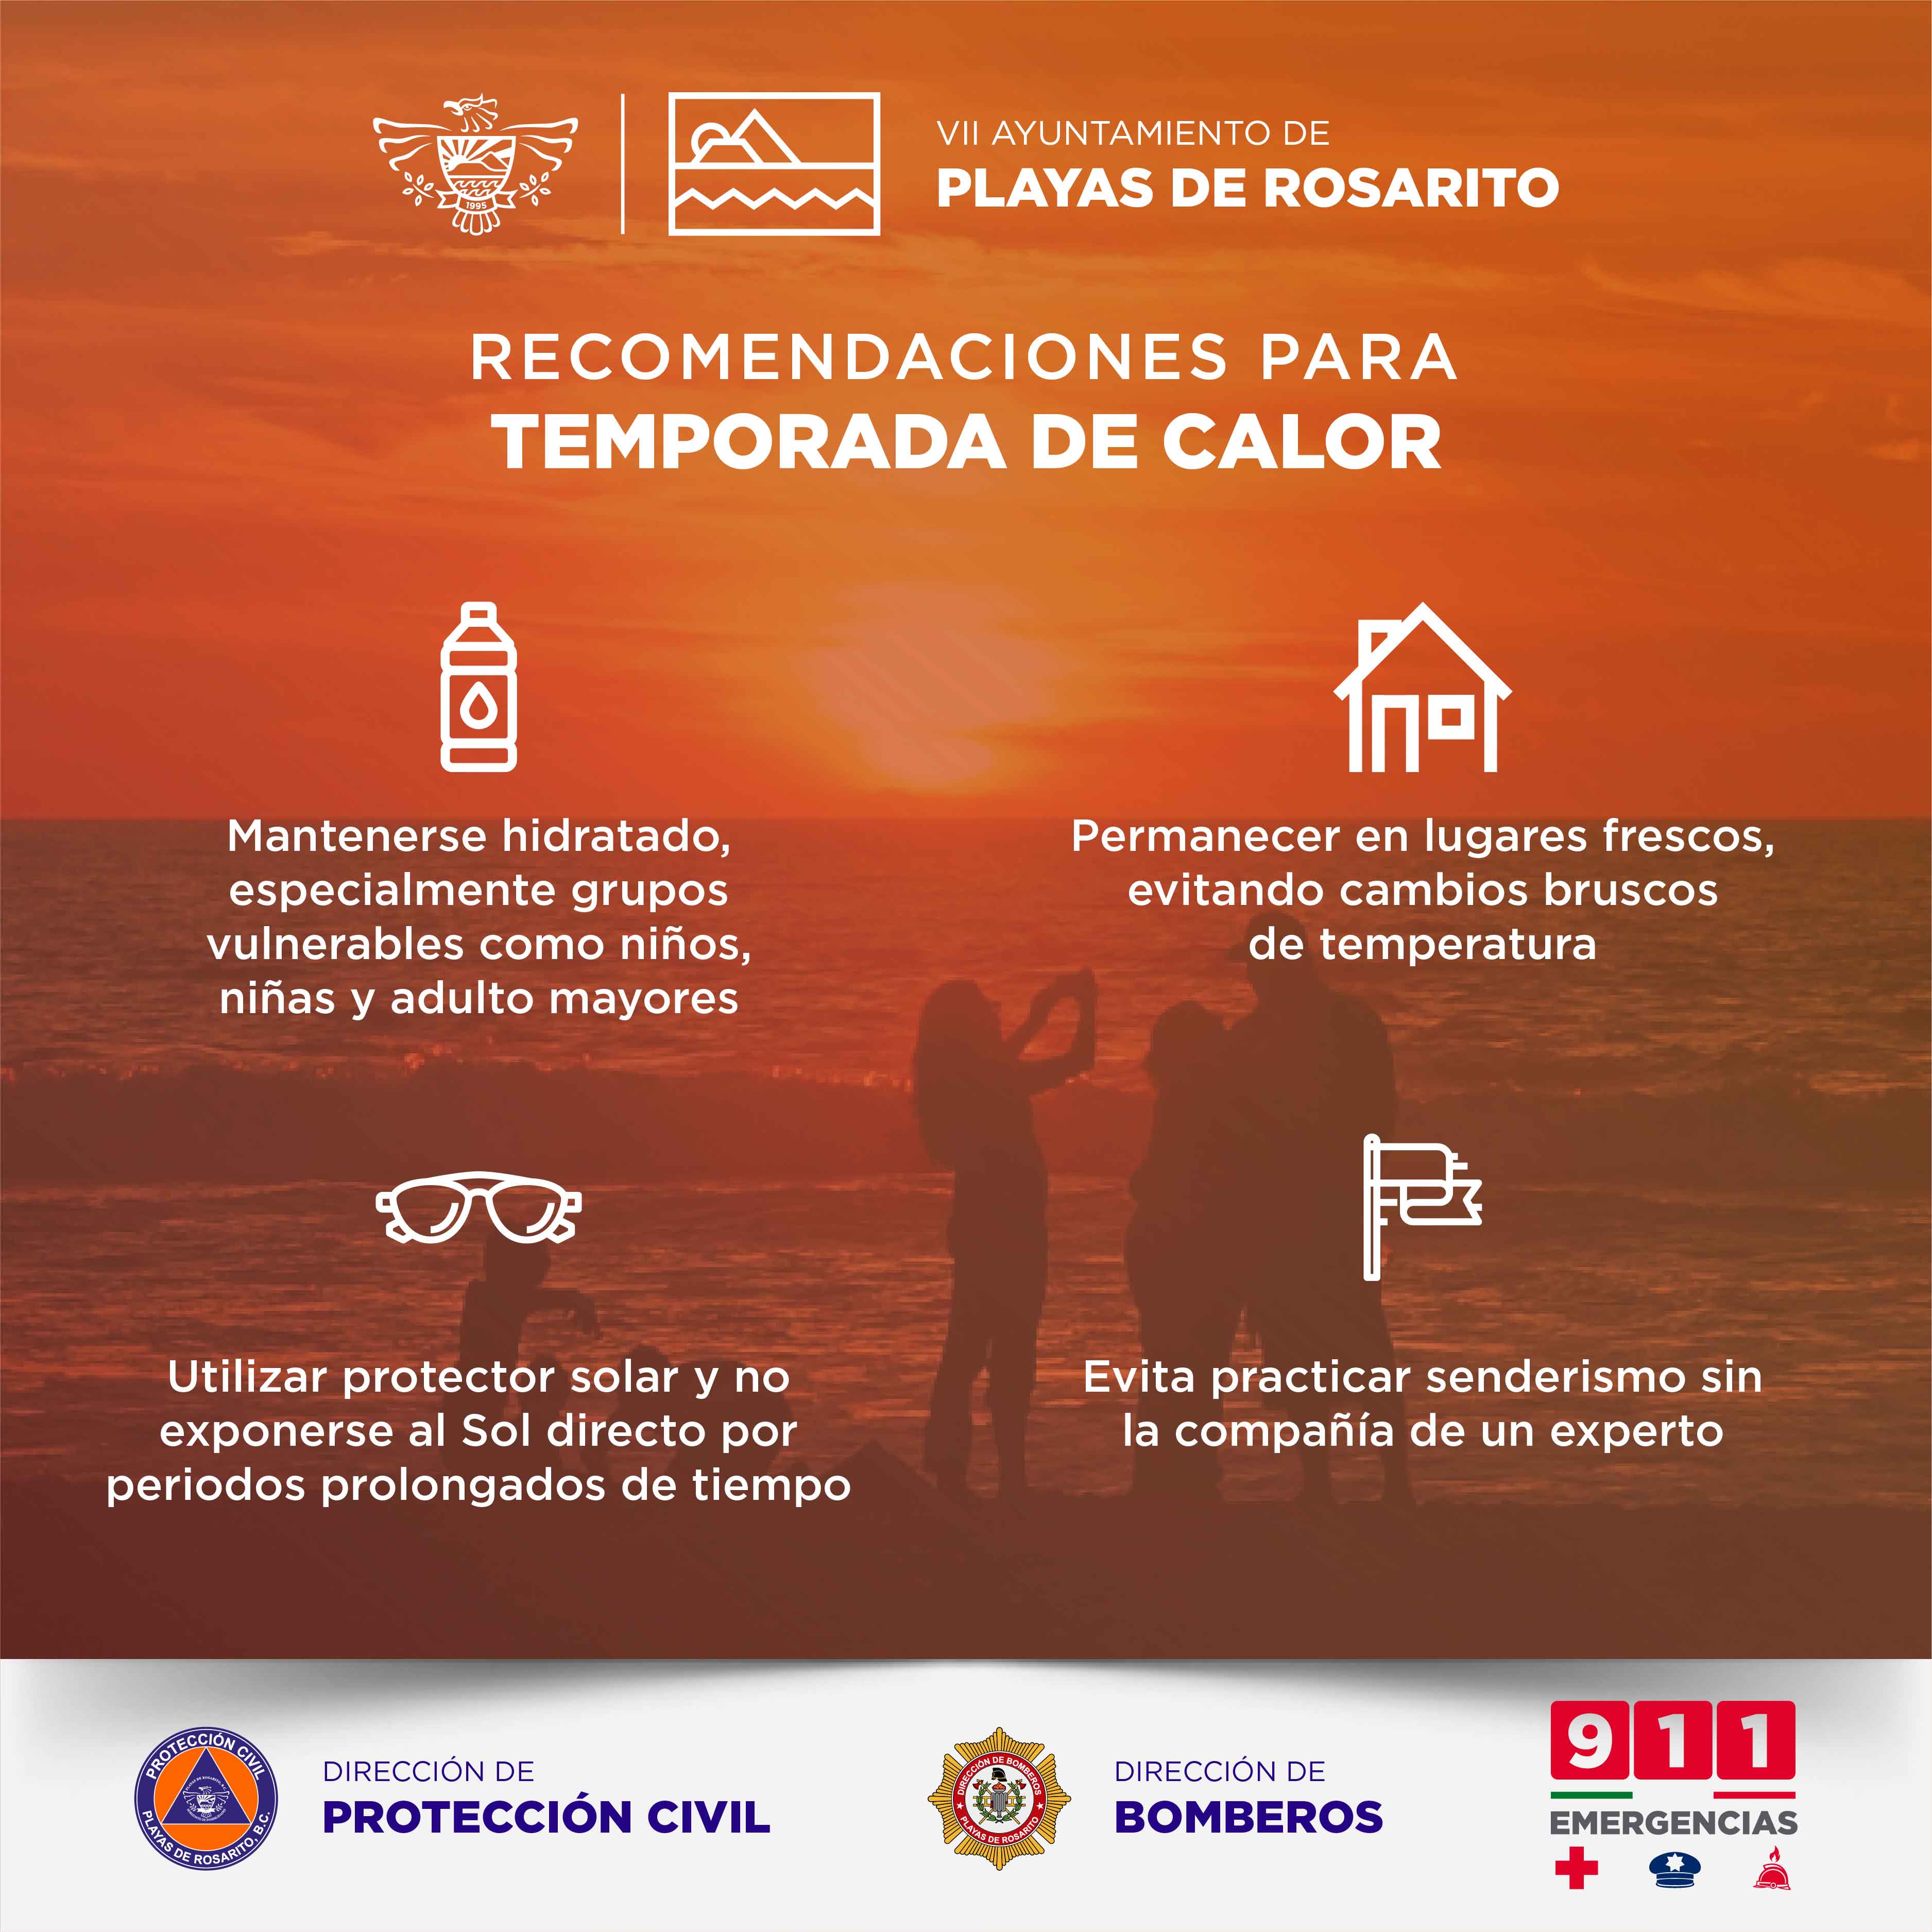 Ayuntamiento de Playas de Rosarito activa pre alerta por ola de calor en la región